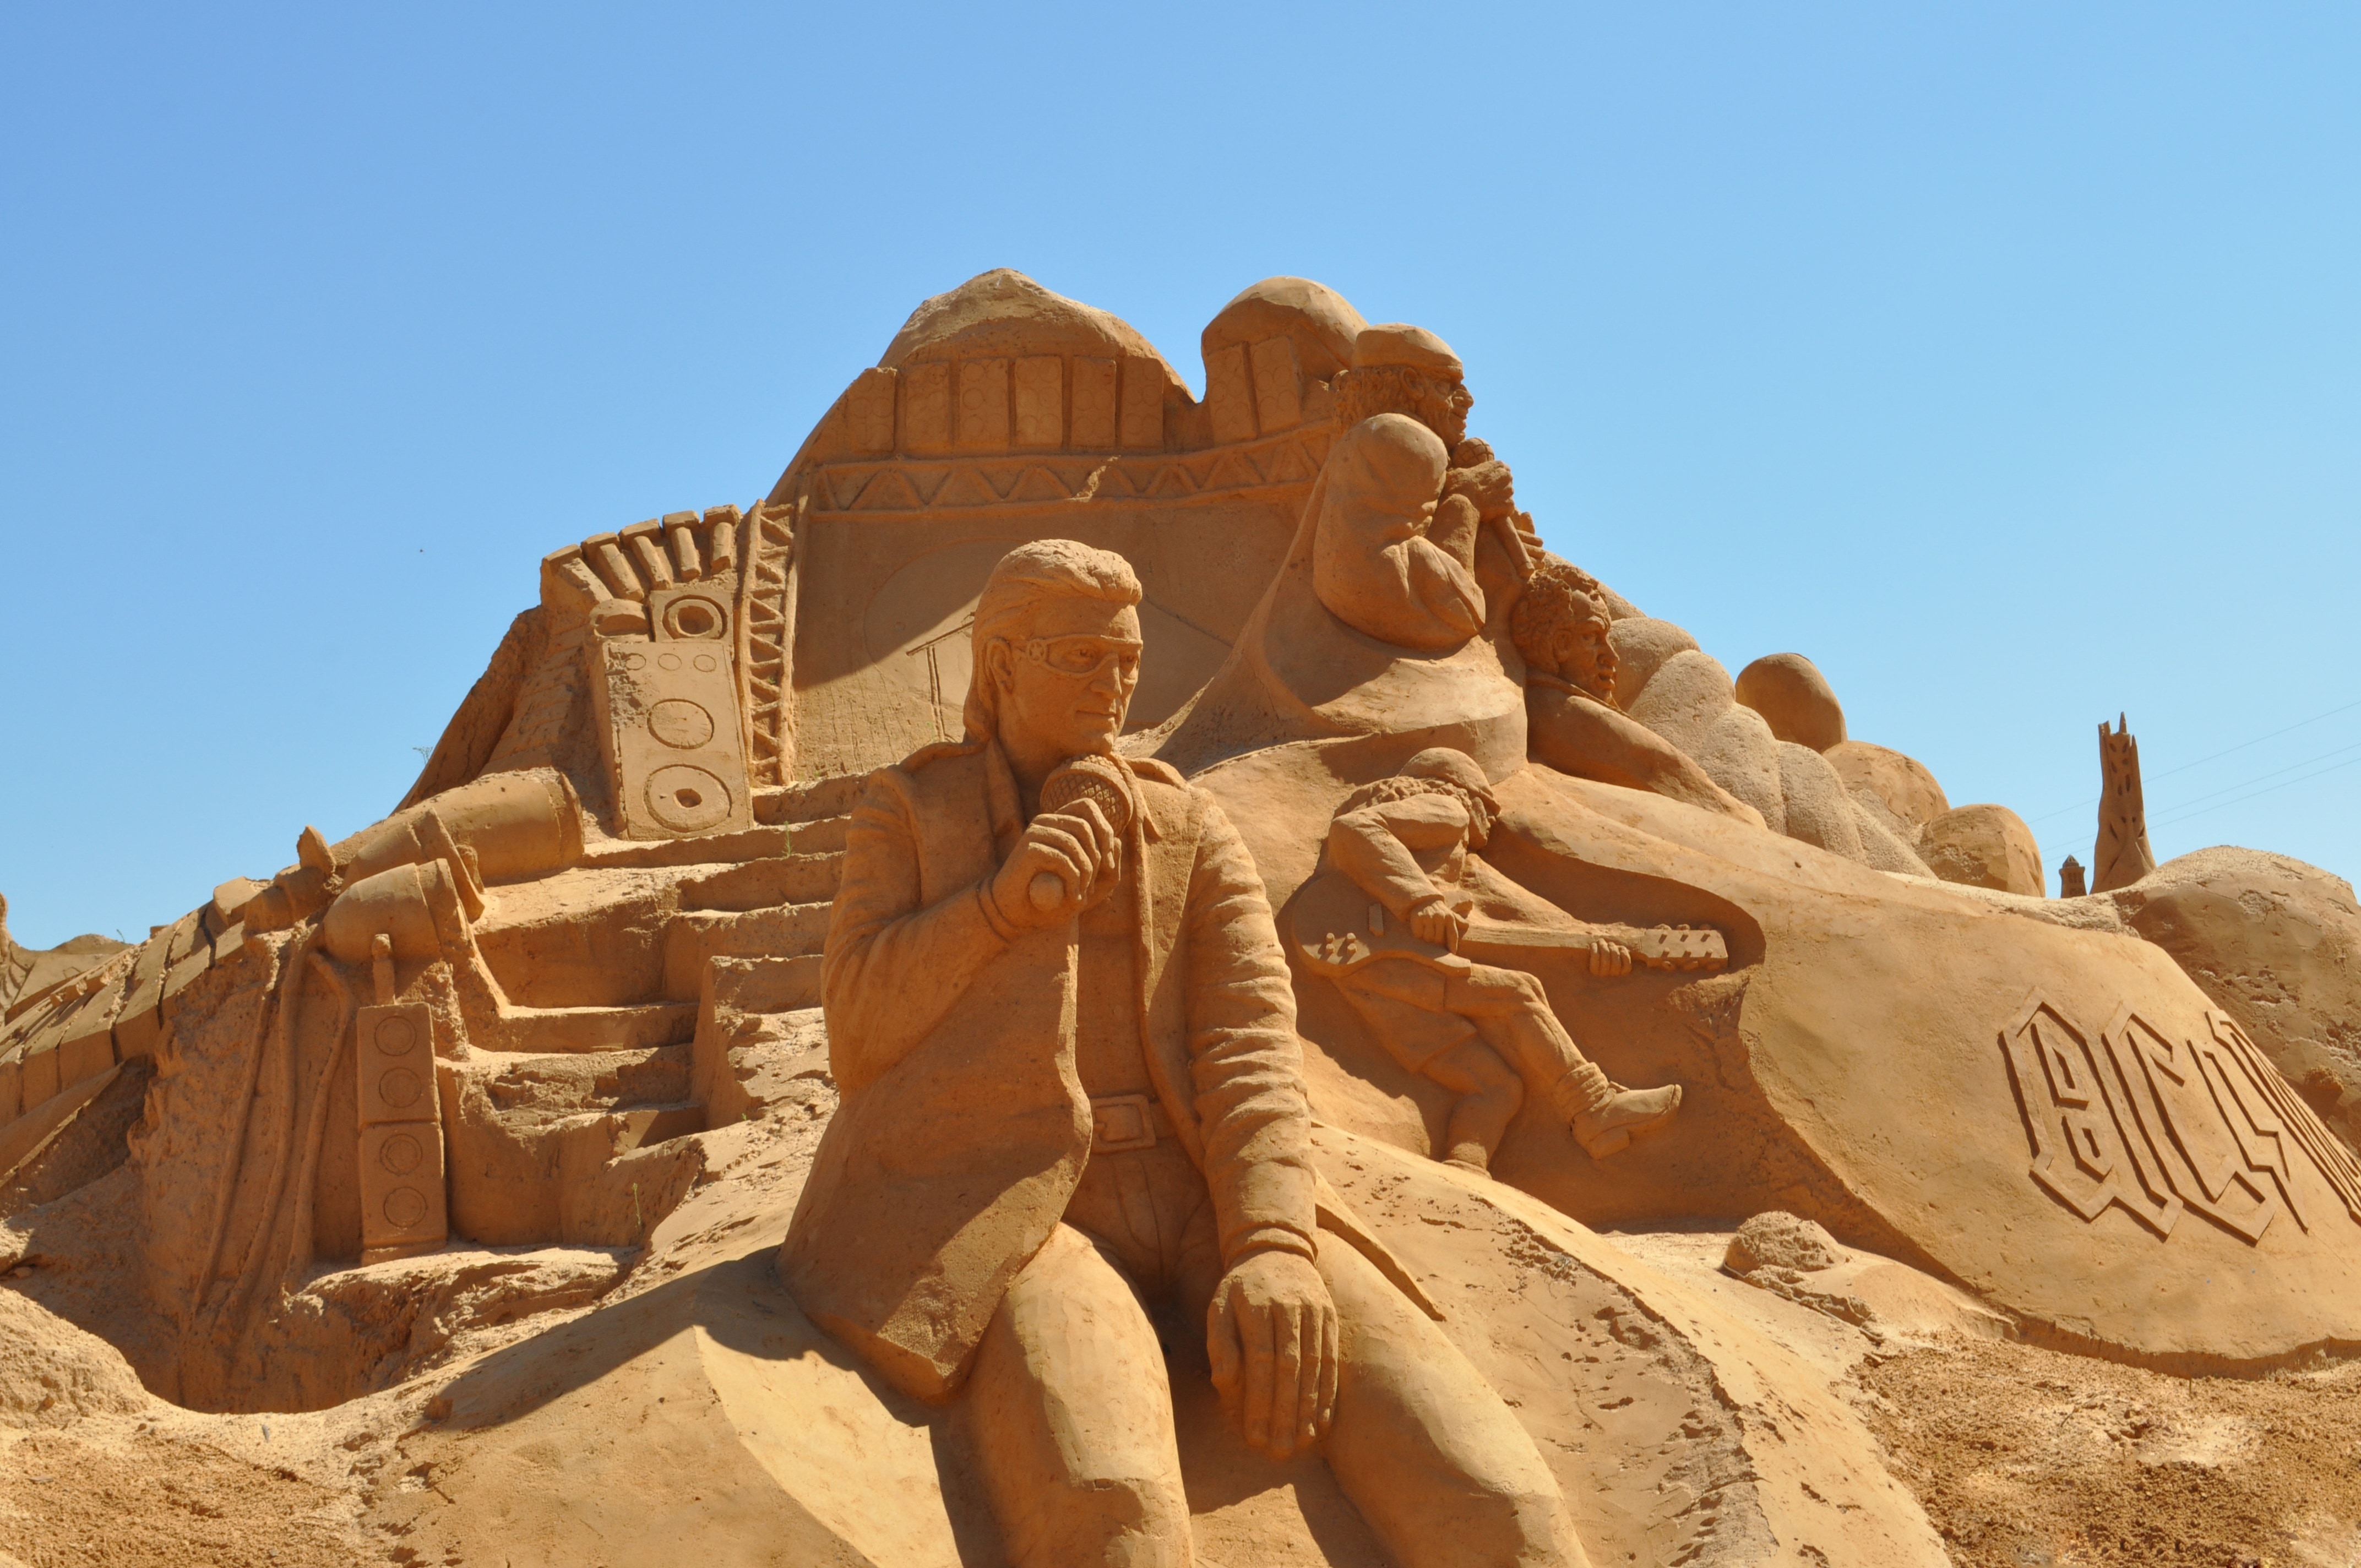 Art, Sculpture, Sand Sculpture, Sand, history, archaeology